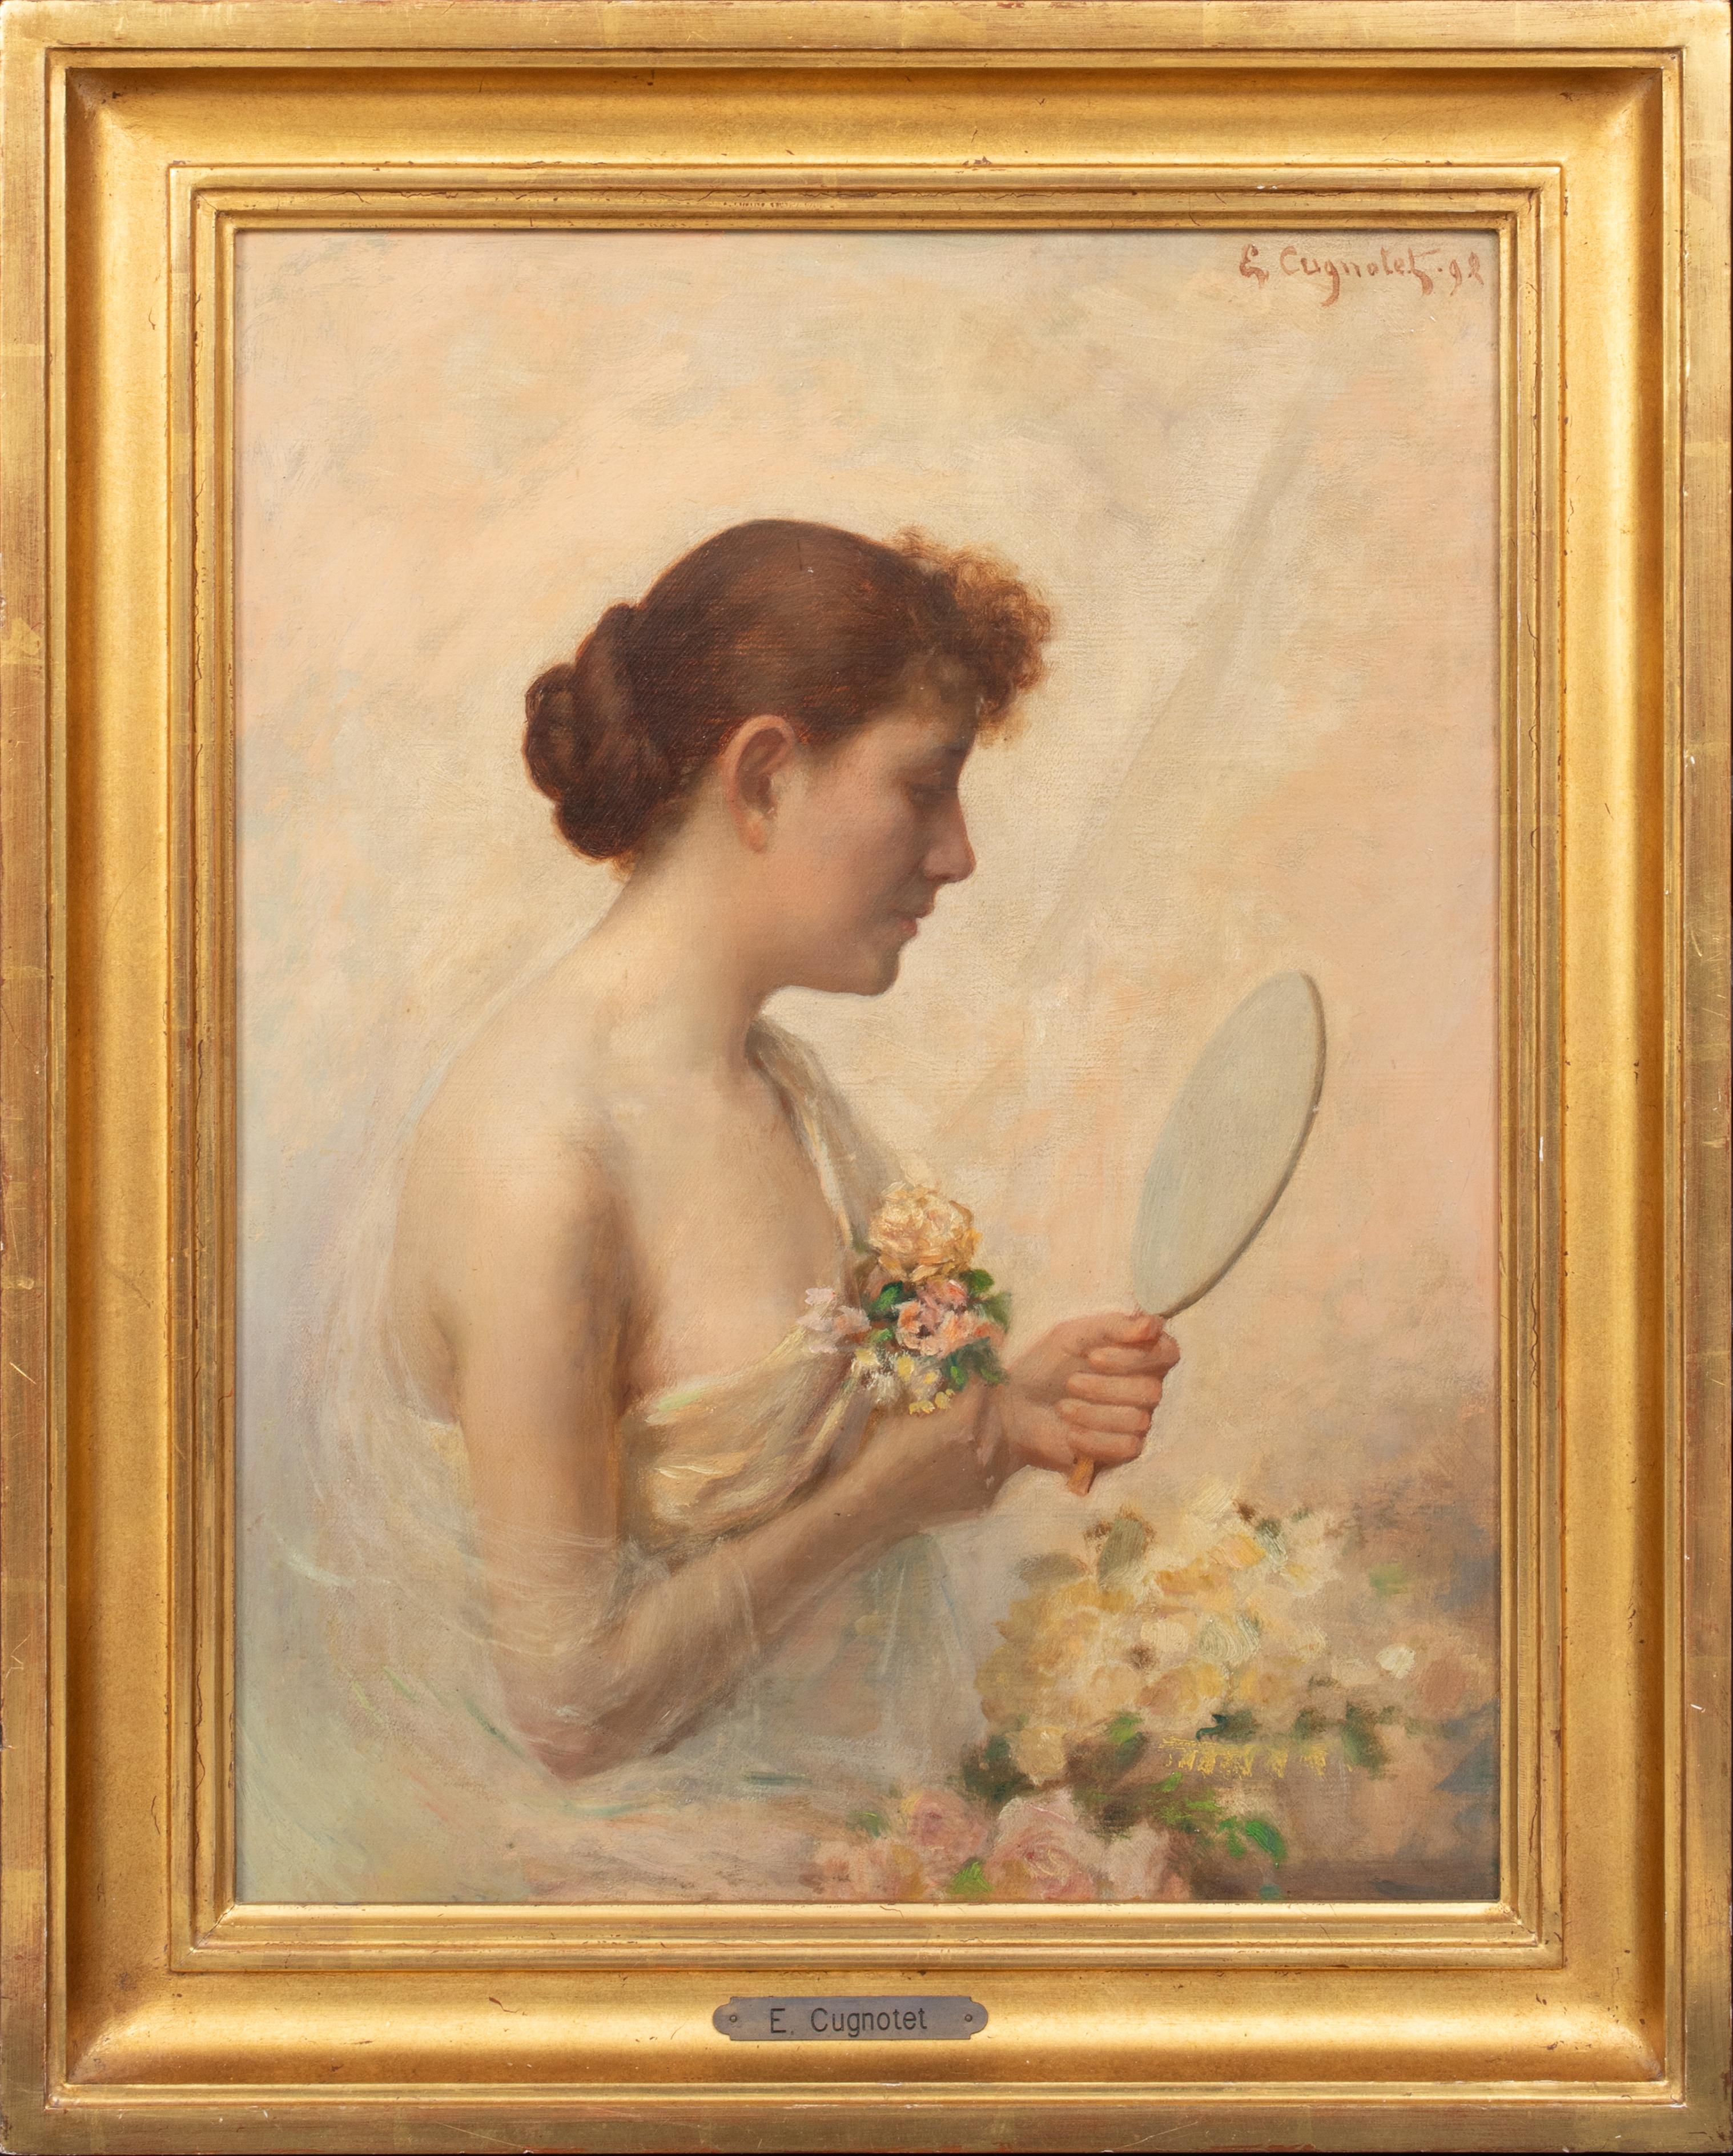 Unknown Portrait Painting - Le Miroir, dated 1892   by ÉDOUARD CUGNOTET (1848-1899)